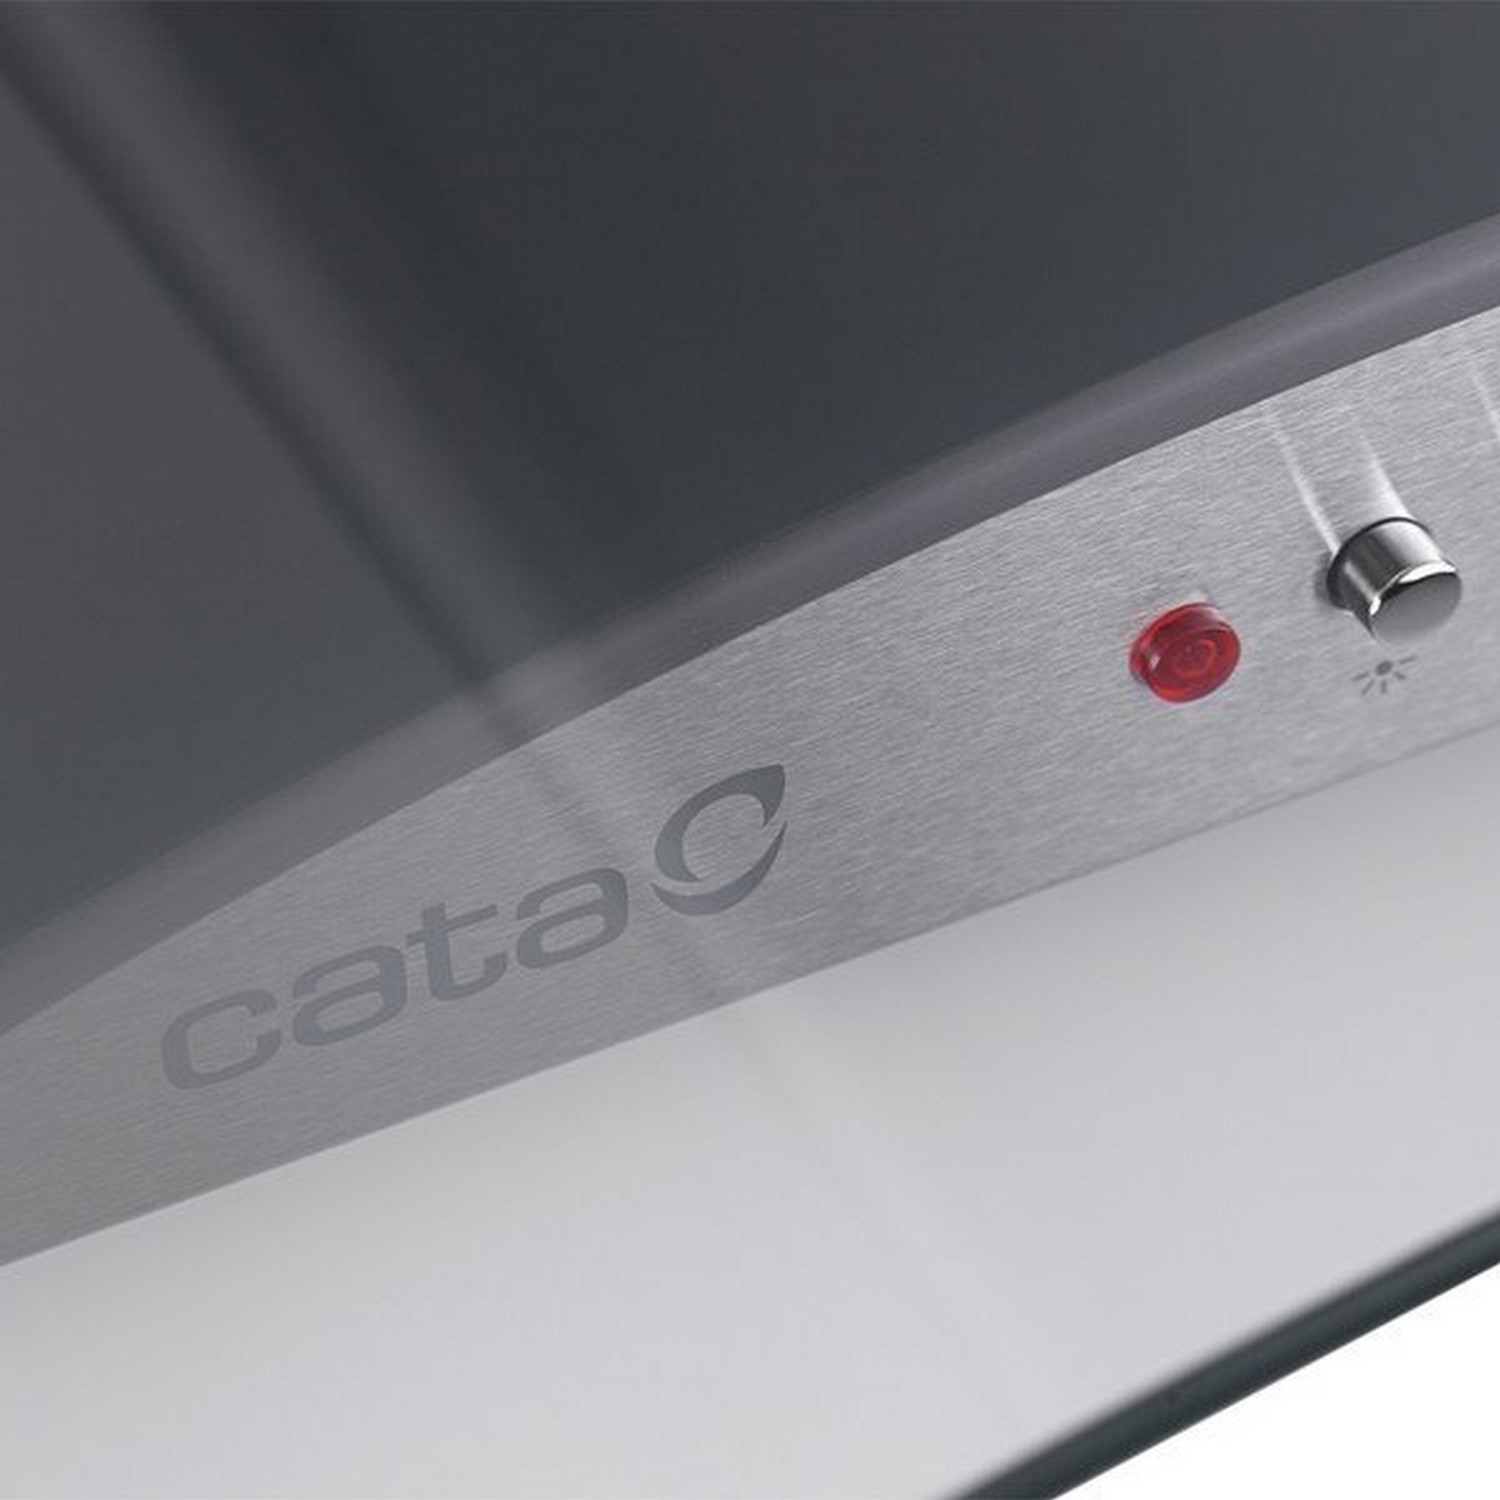 Кухонная вытяжка Cata C-900 Glass /B (New) инструкция - изображение 6